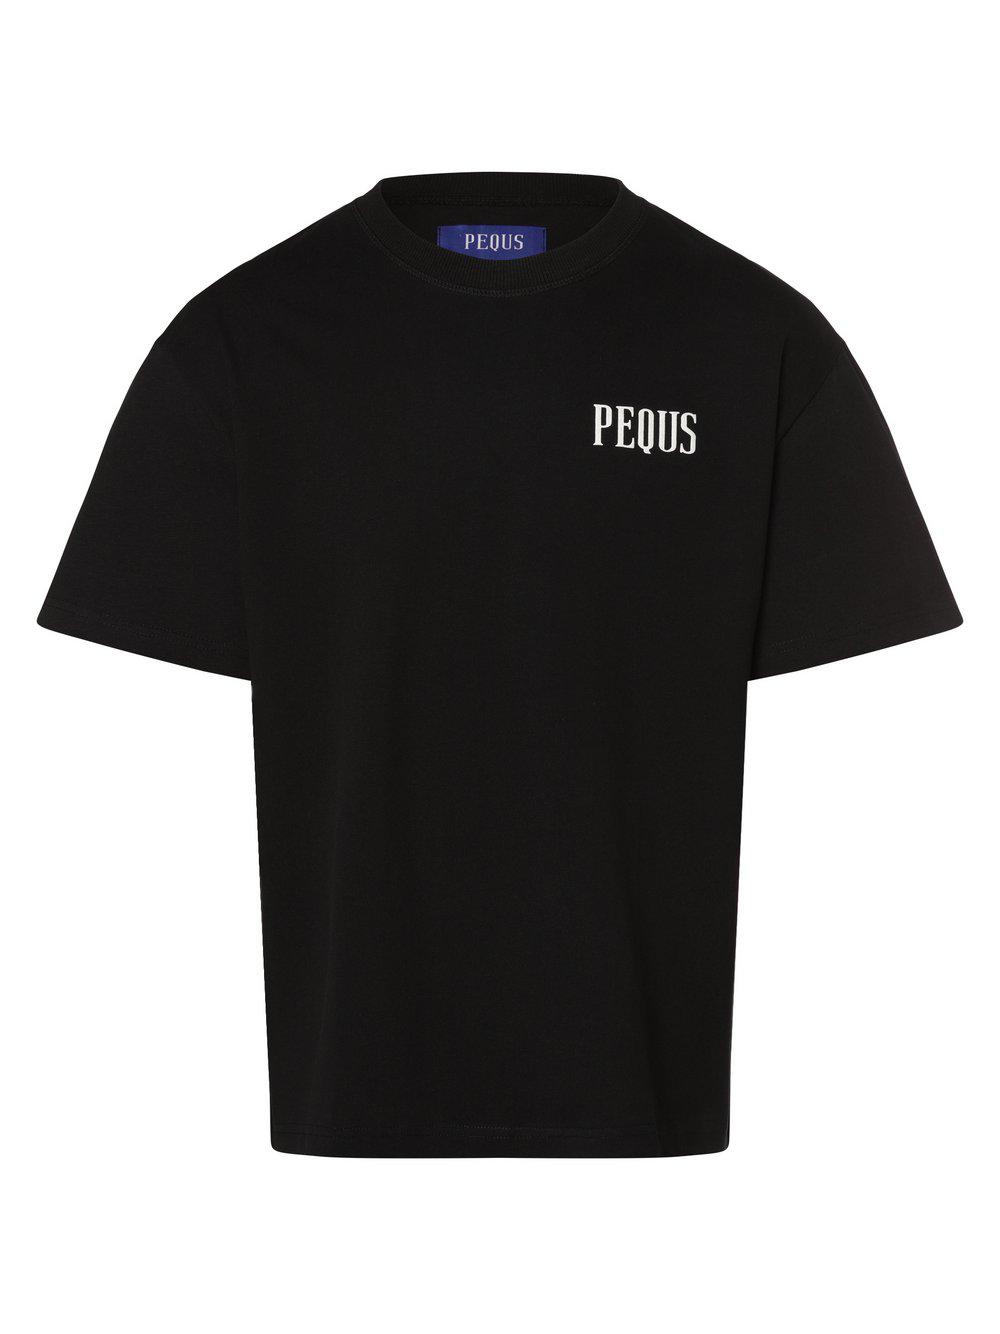 PEQUS T-Shirt Herren Baumwolle Rundhals bedruckt, schwarz von PEQUS